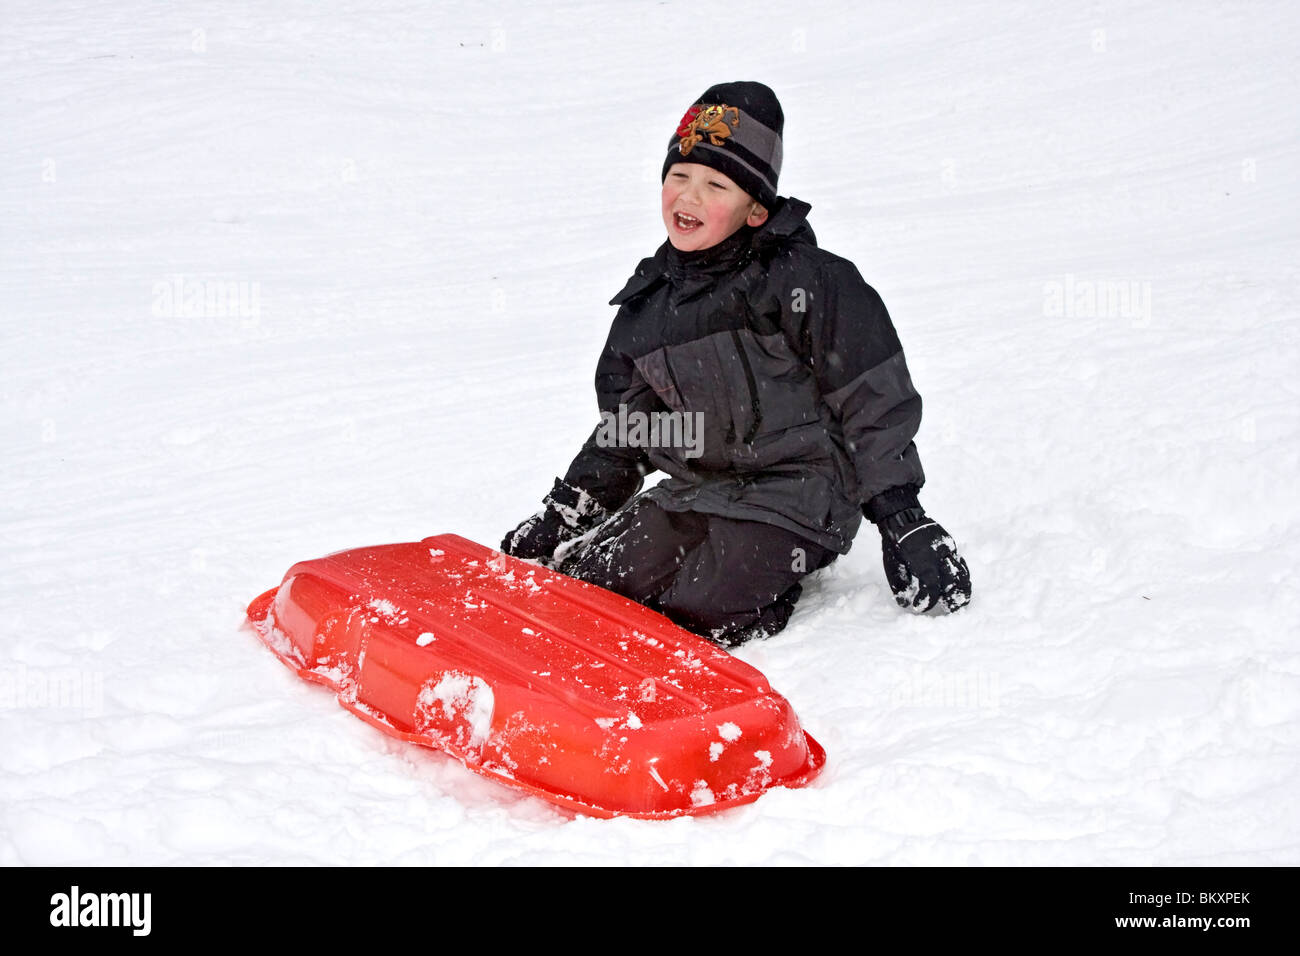 Les enfants en bas de pente courte de traîneau en hiver, South Lake Tahoe, California, USA. Ici un garçon rires après un crash. Banque D'Images